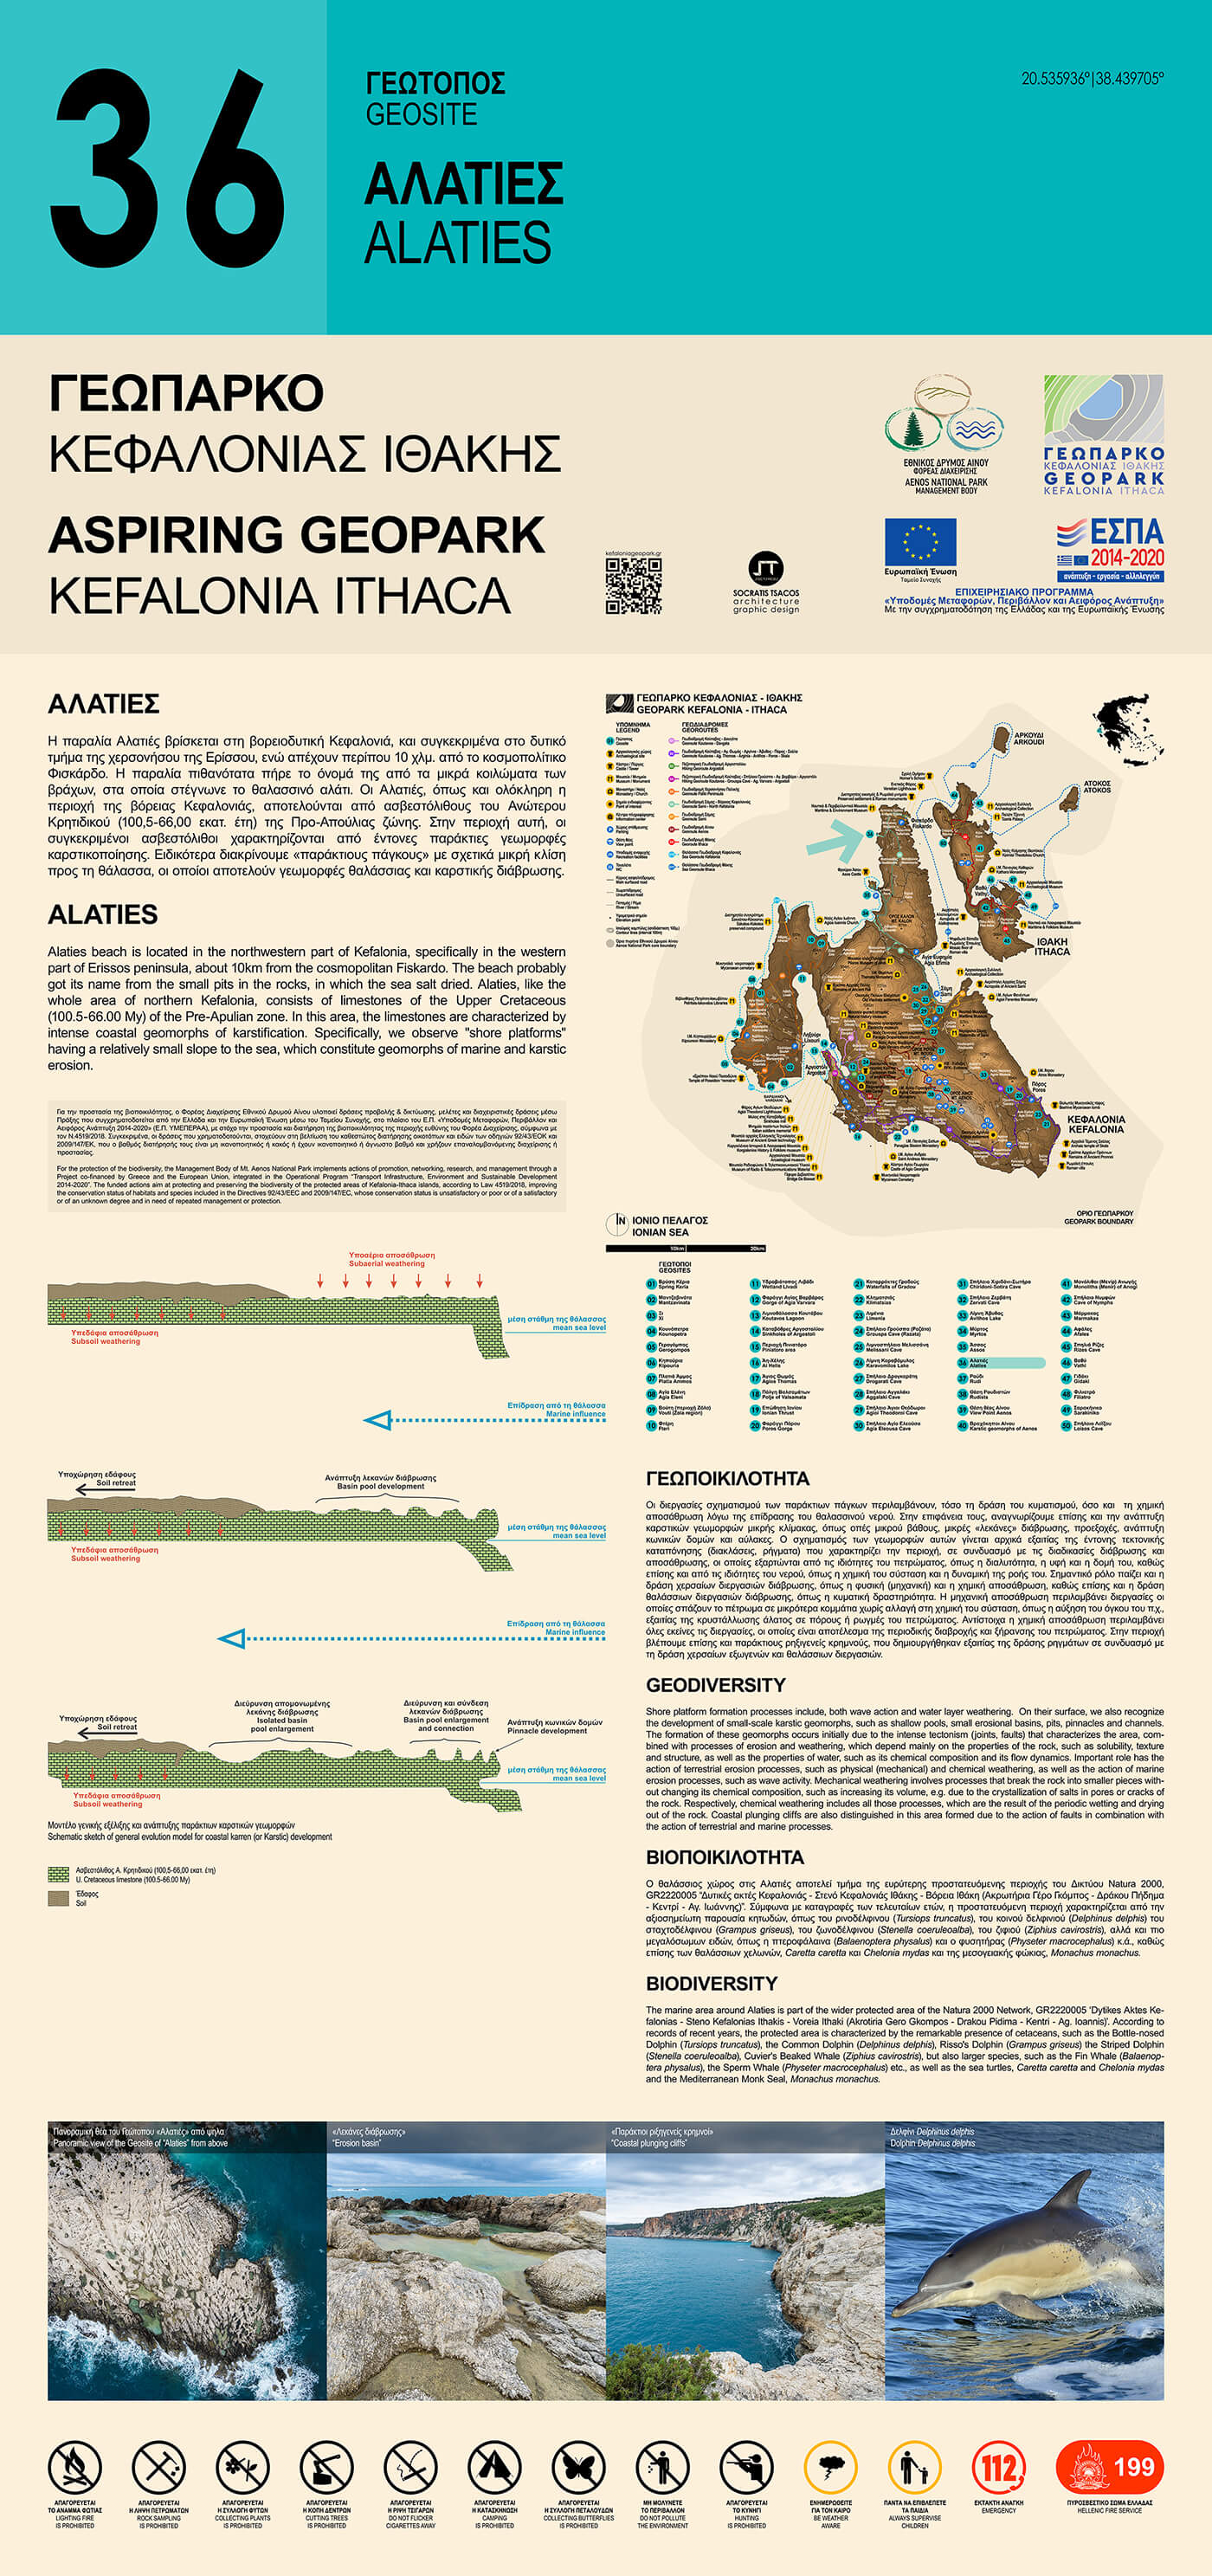 Το περιεχόμενο της Ερμηνευτικής Πινακίδας για τη γεωποικιλότητα και τη βιοποικιλότητα του Γεωτόπου Σαρακήνικο 